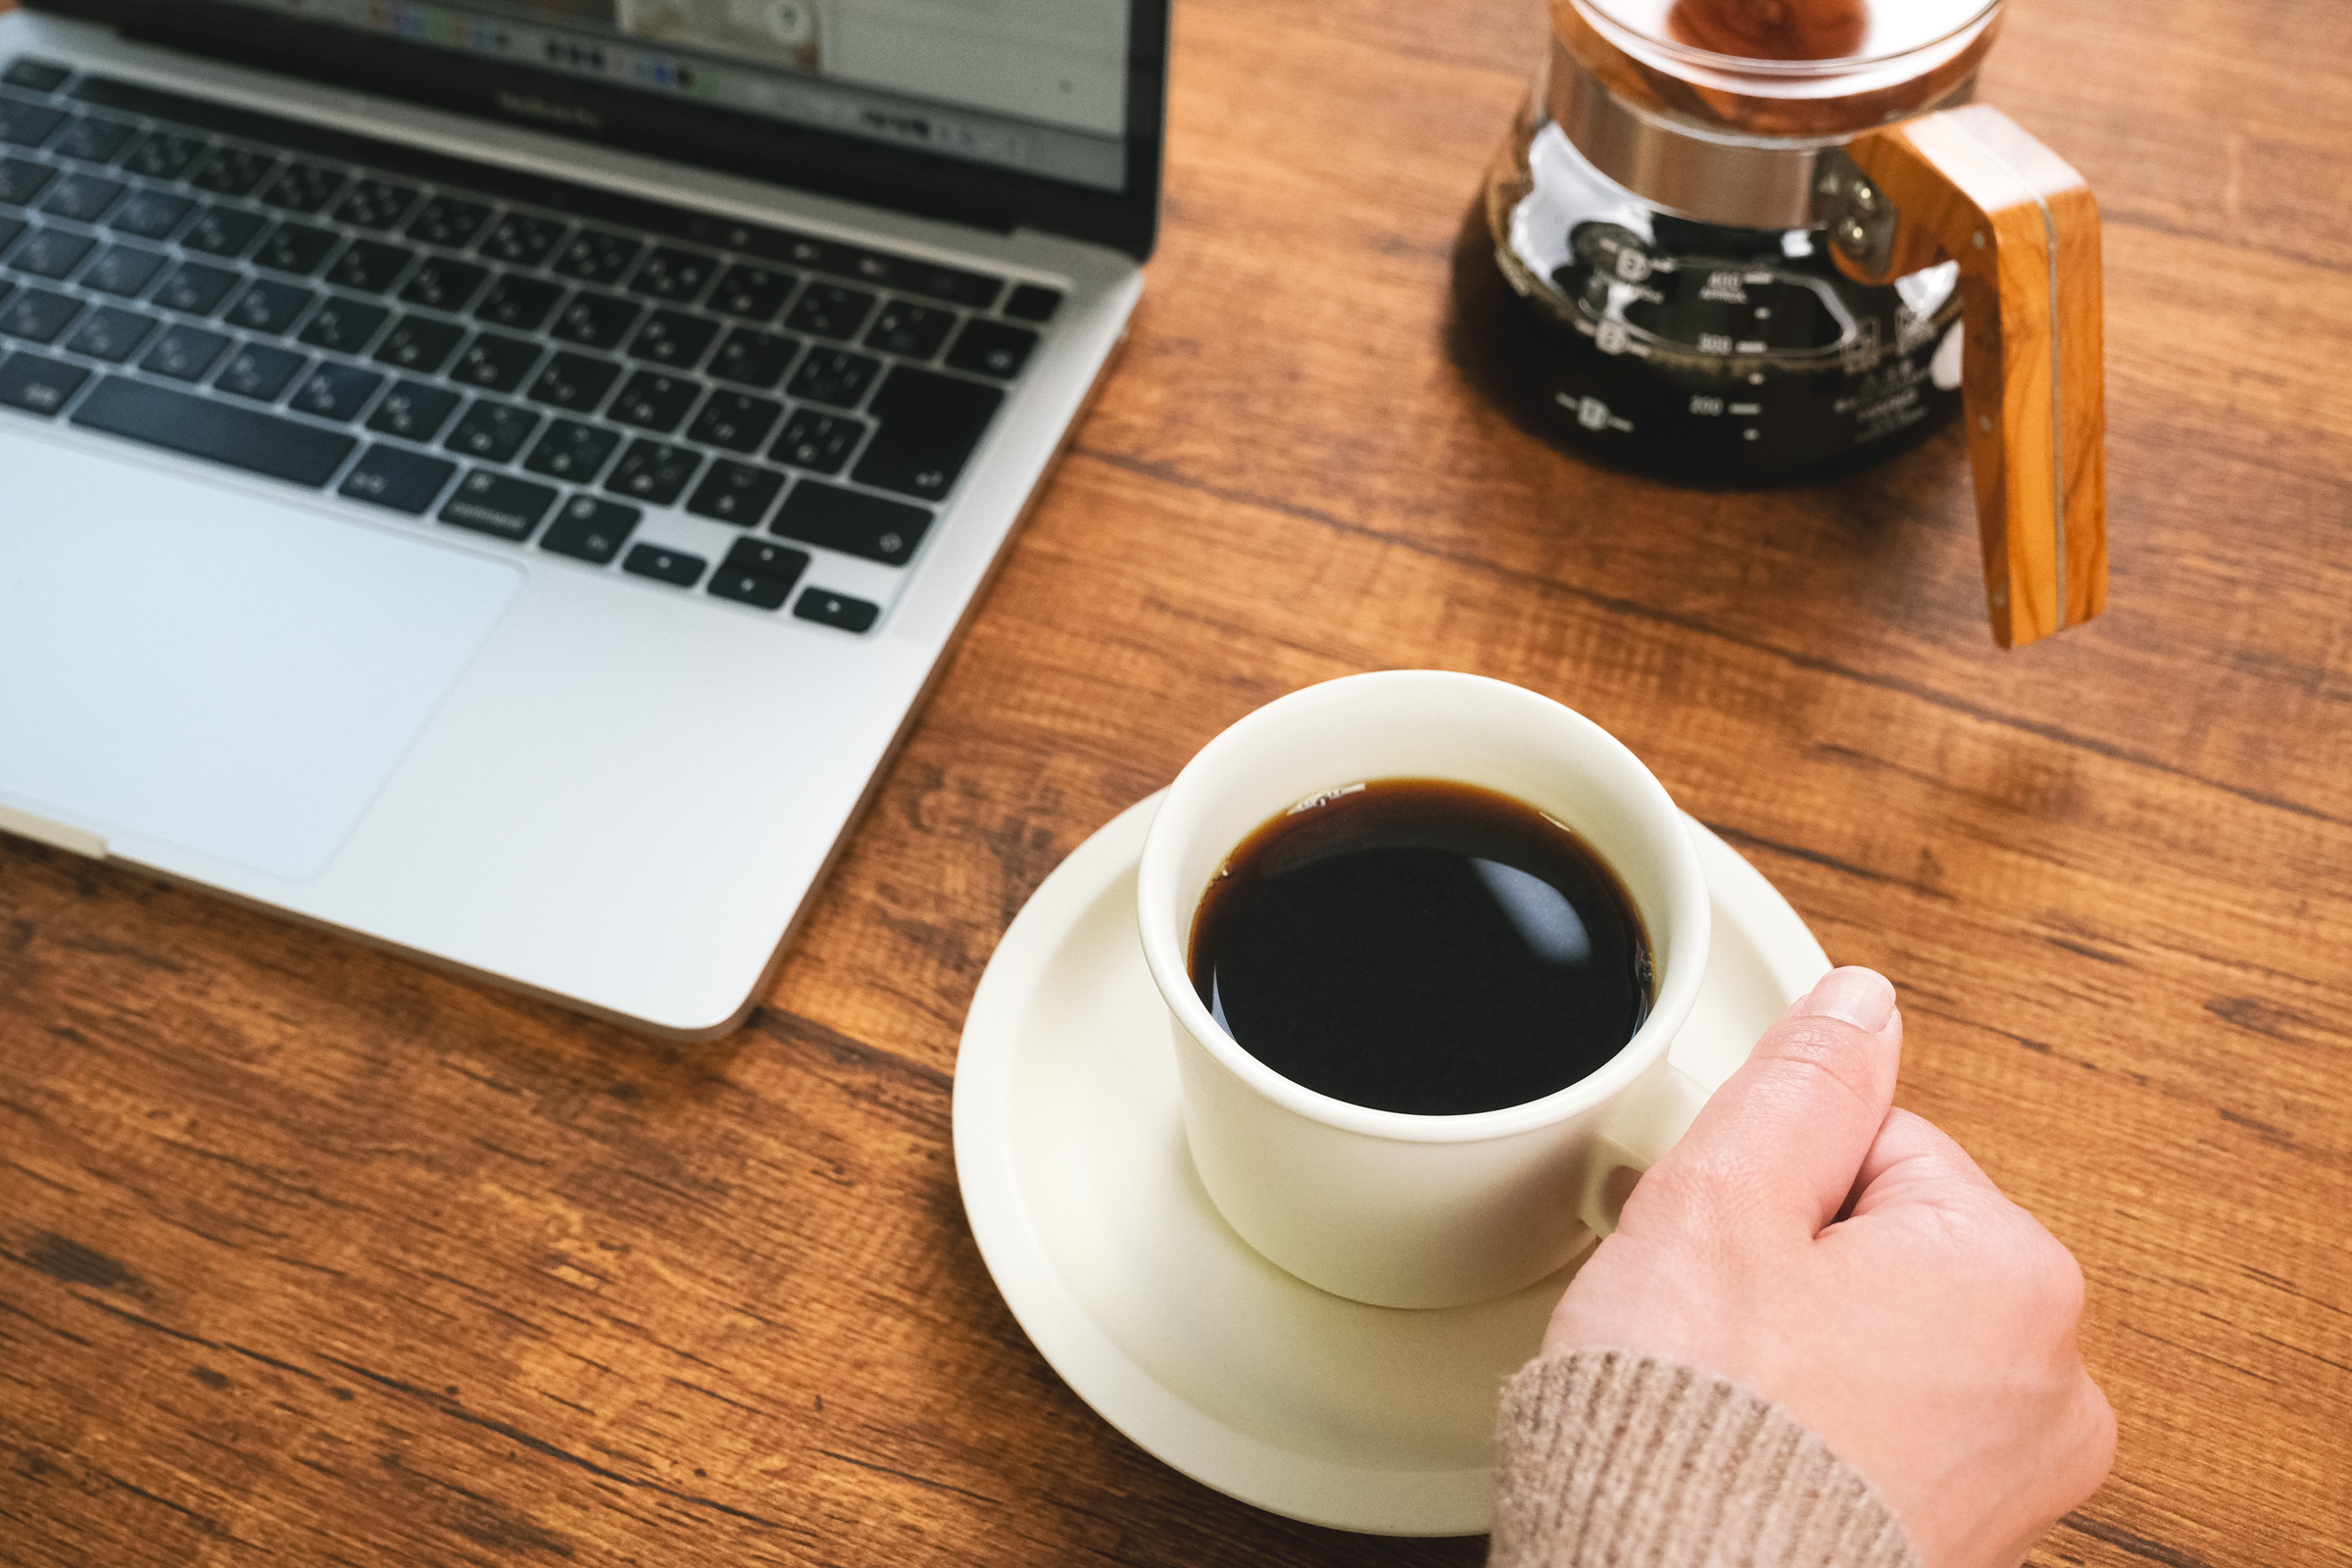 カフェインは用法・用量に気をつけてほどほどに摂取すれば、仕事の効率を上げたり、リラックス作用を得たりできる優れもの。その注意点やデメリットについて詳しく知っていますか？福利厚生の一環としてオフィスコーヒー導入を考えている企業さまにぜひ読んでいただきたい、カフェインの効能やコーヒー休憩のこつをまとめてみました。